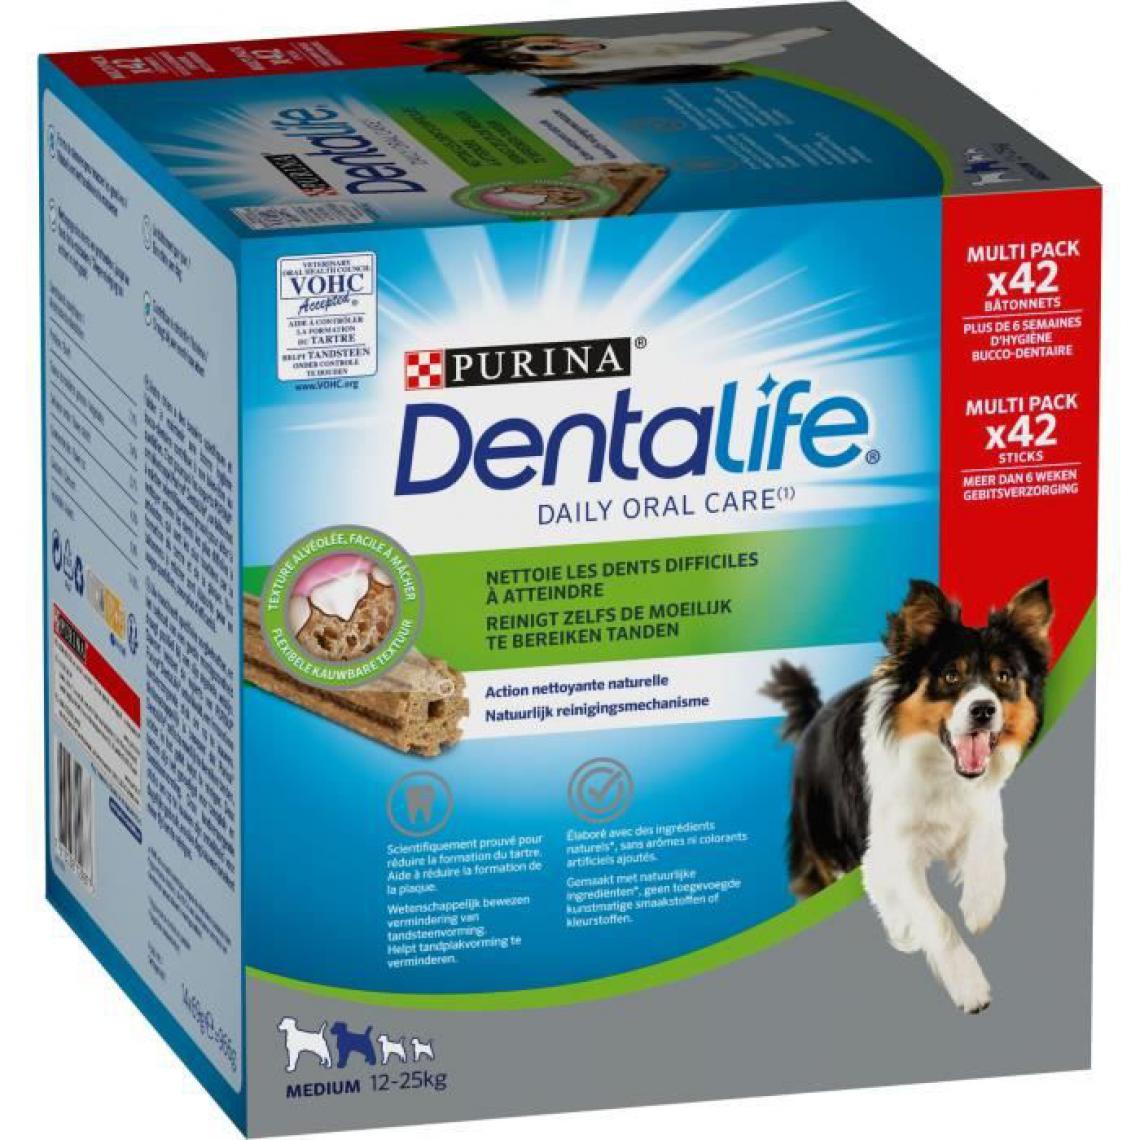 Dentalife - Medium - MultiPack 966 g - Friandise pour chien